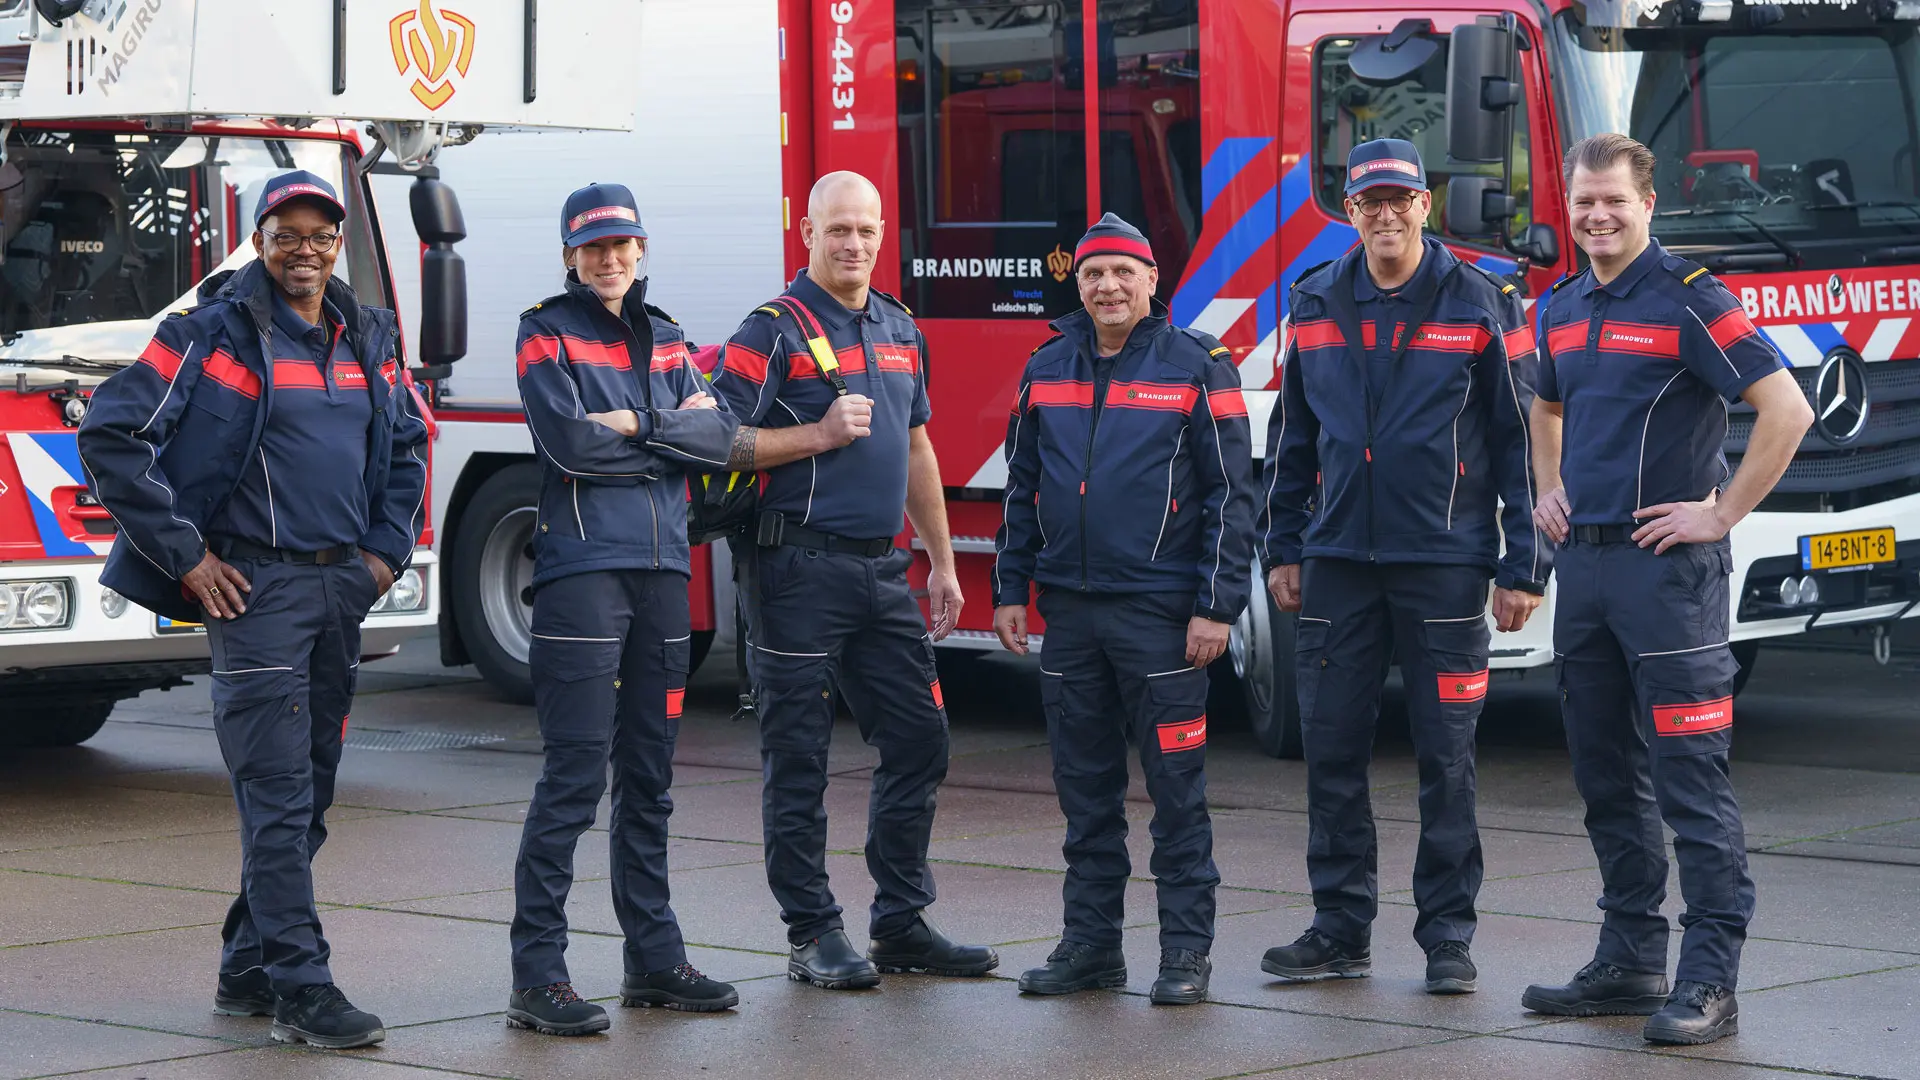 Brandweer krijgt nieuwe uniformen, nieuwe uniform draagt bij aan de eenheid van de brandweer